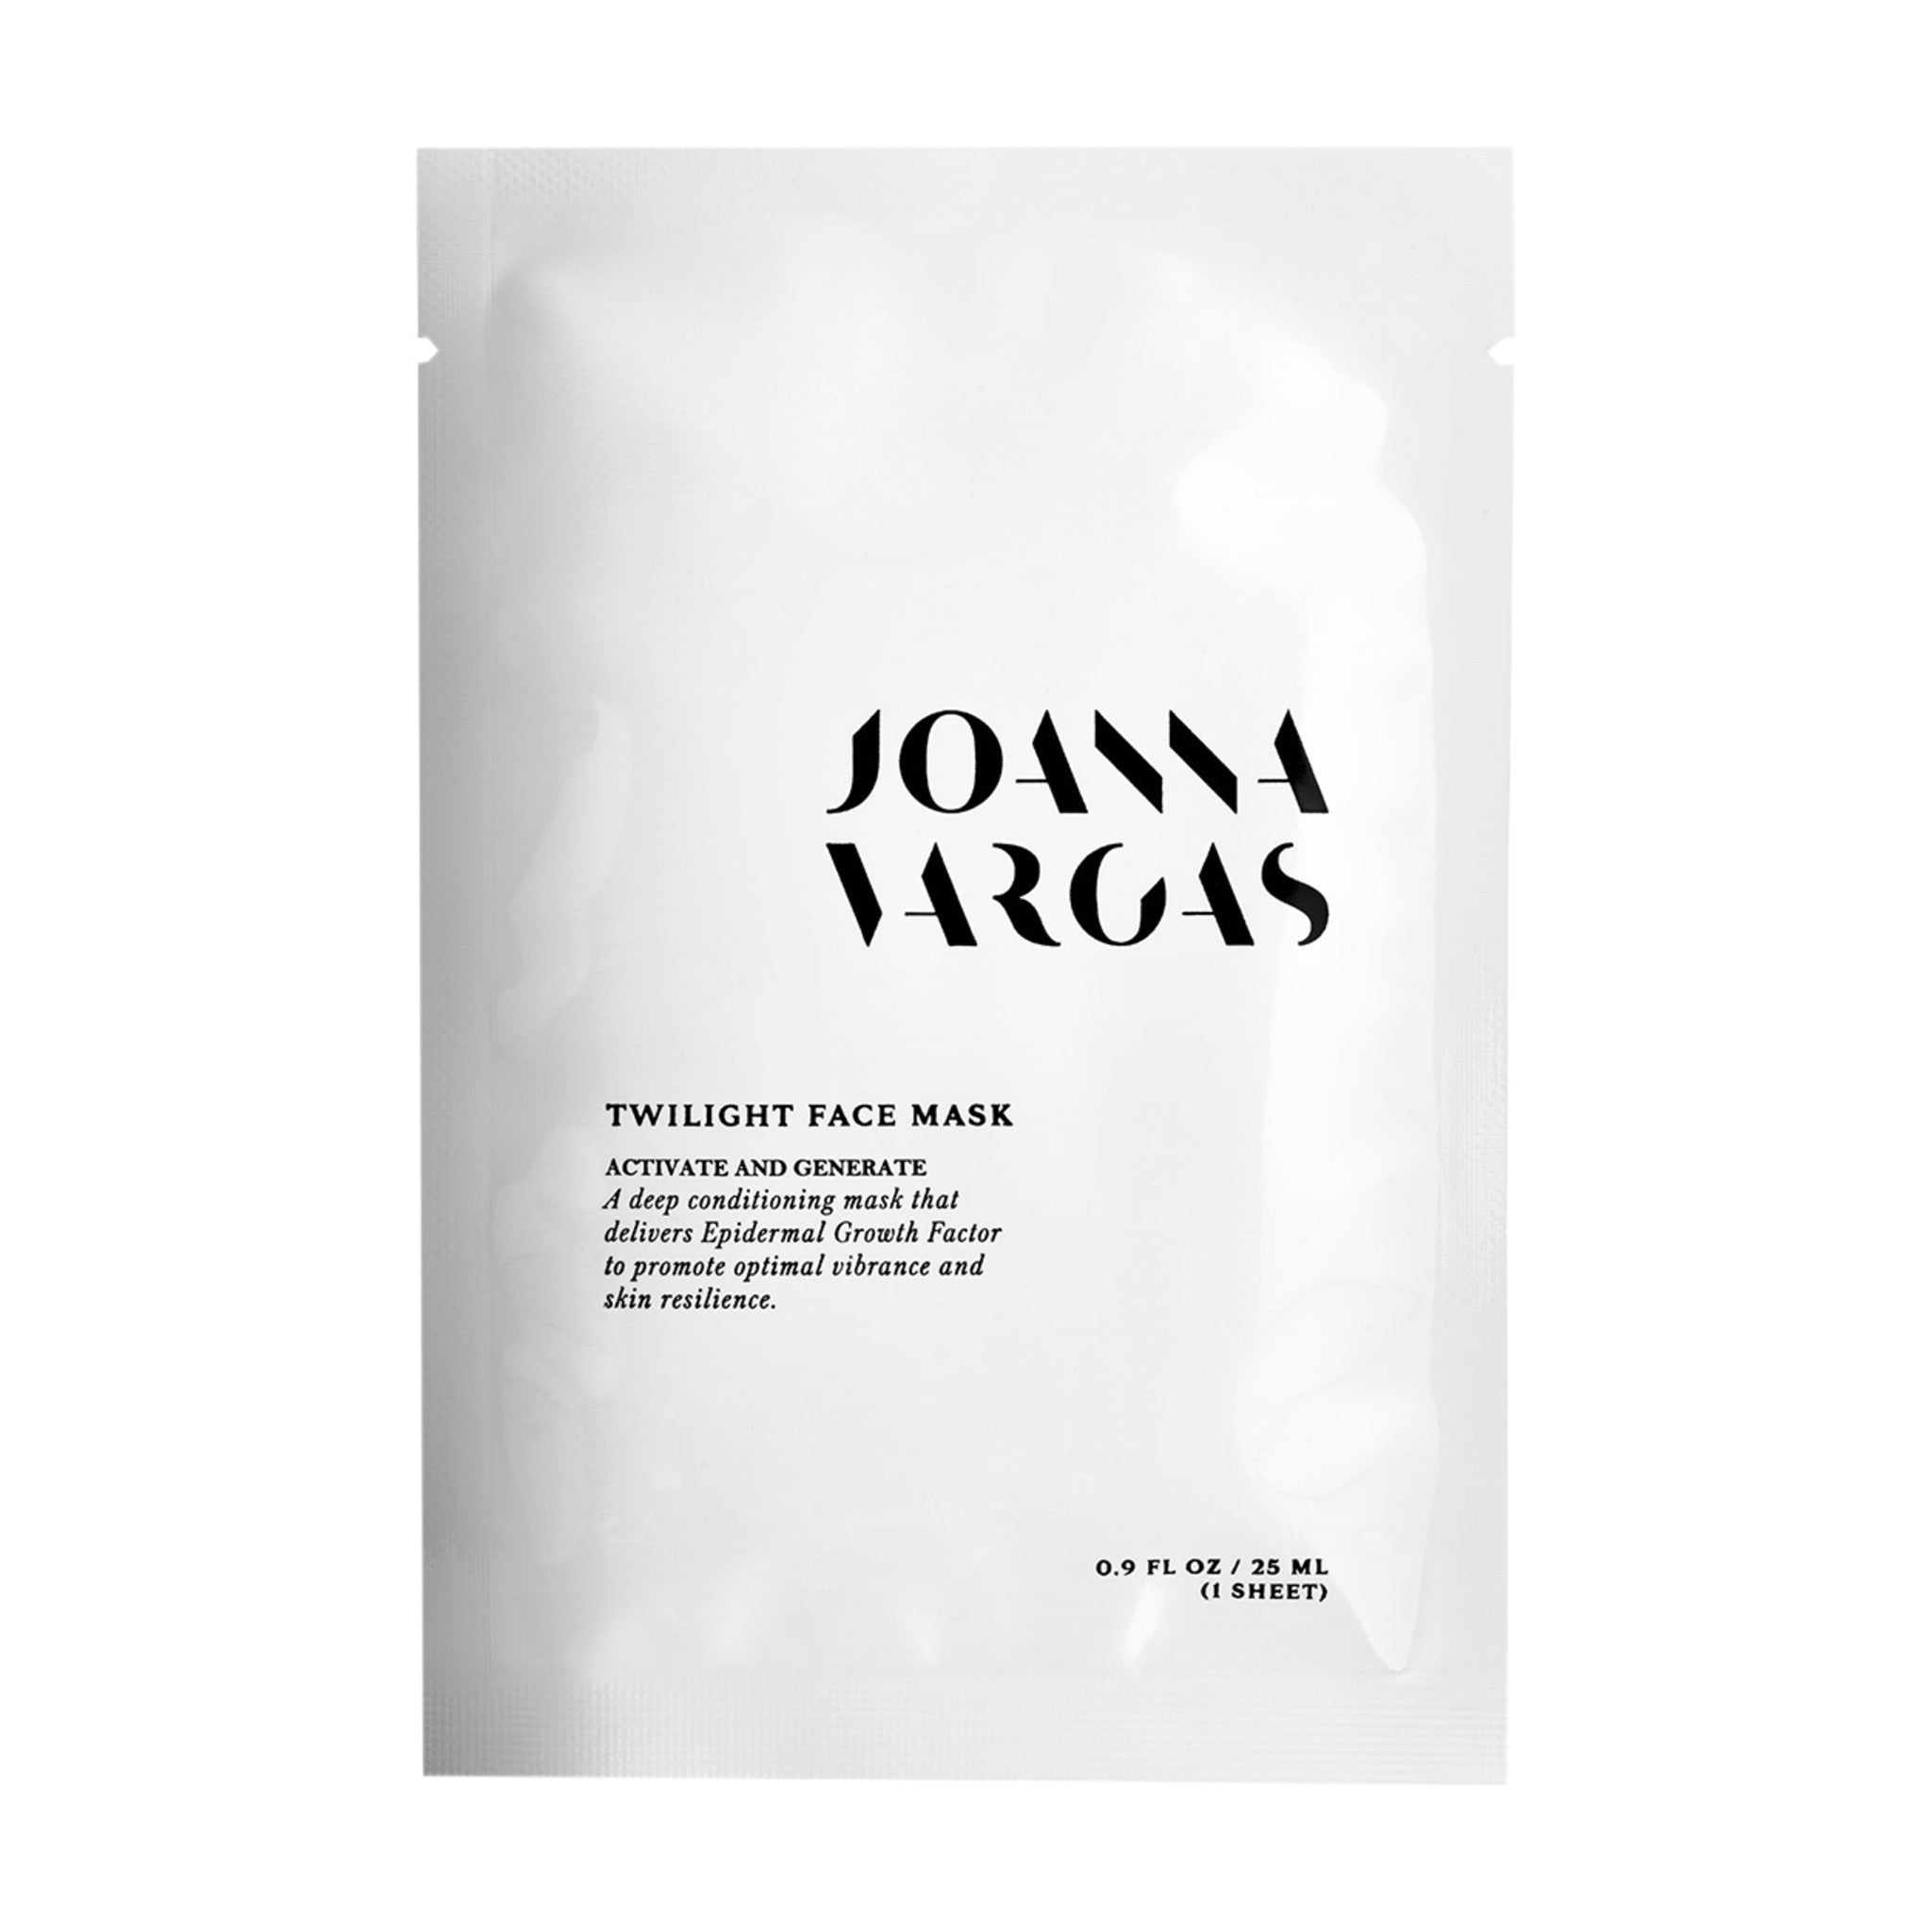 Joanna Vargas Twilight Sheet Mask Size variant: 1 Treatment main image.